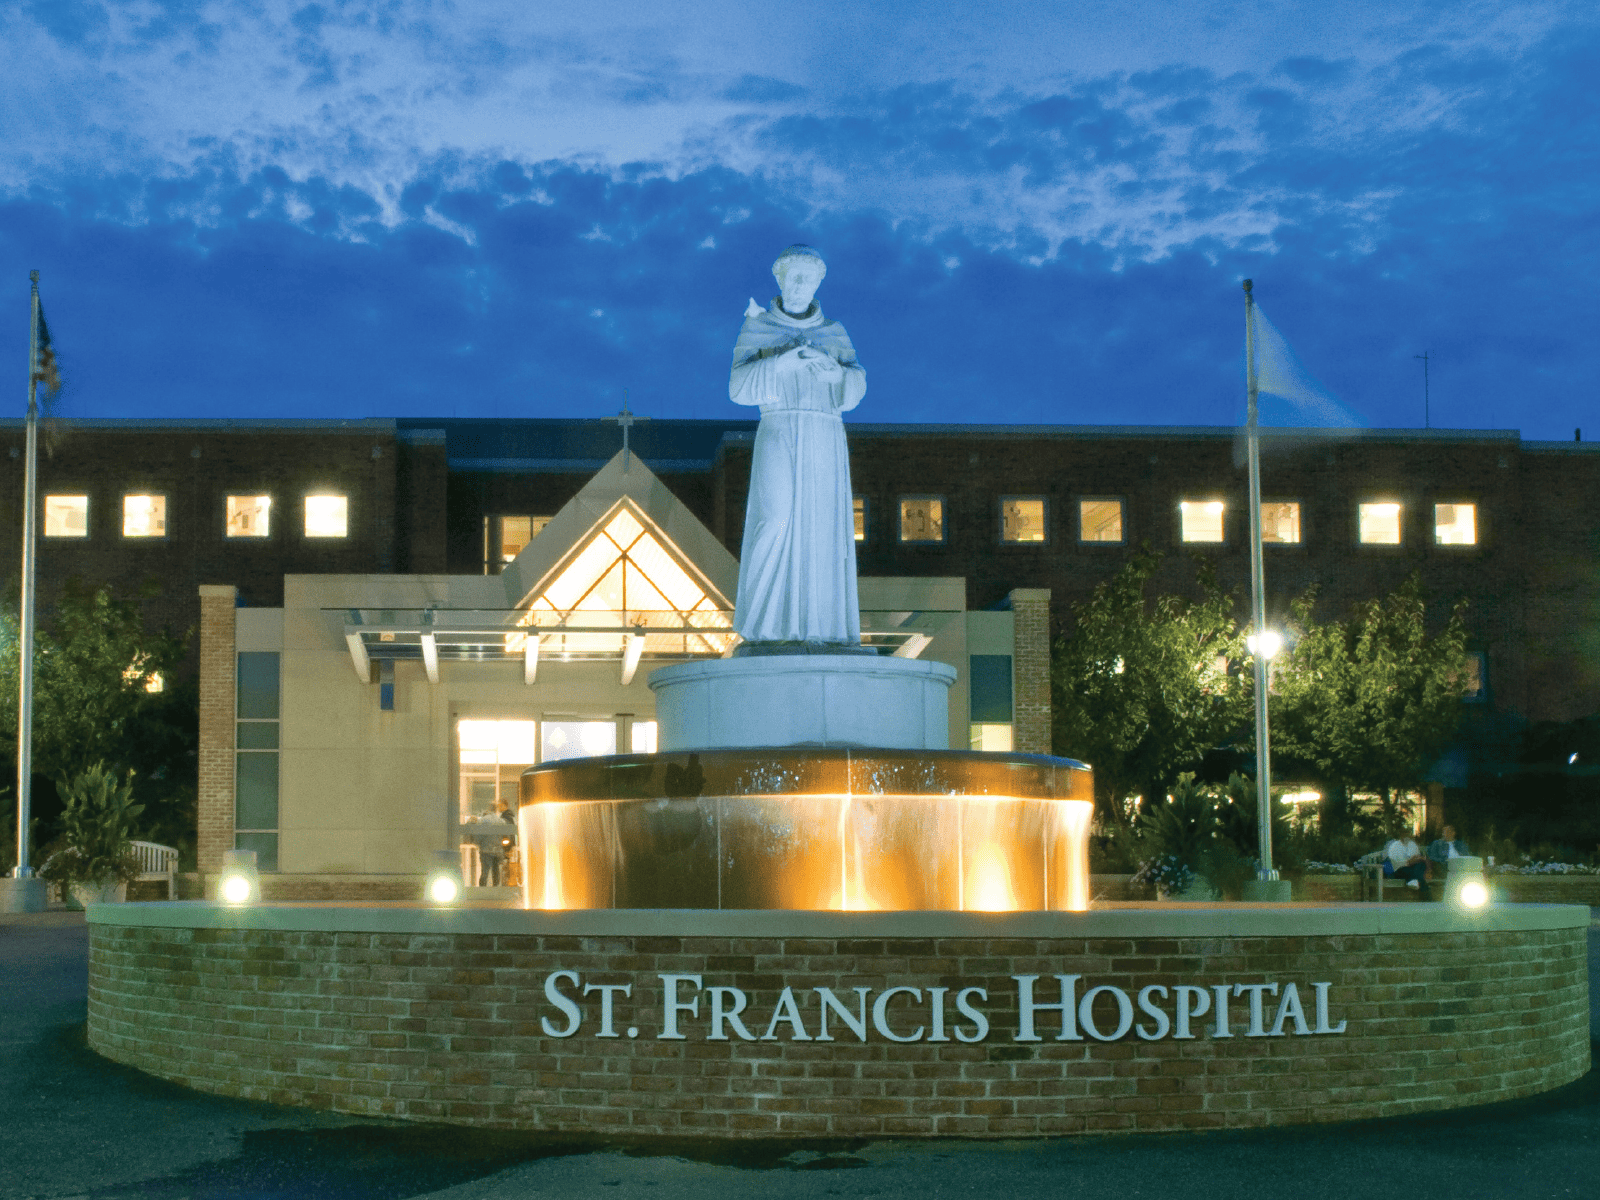 St. Francis Hospital & Heart Center 
Roslyn, NY